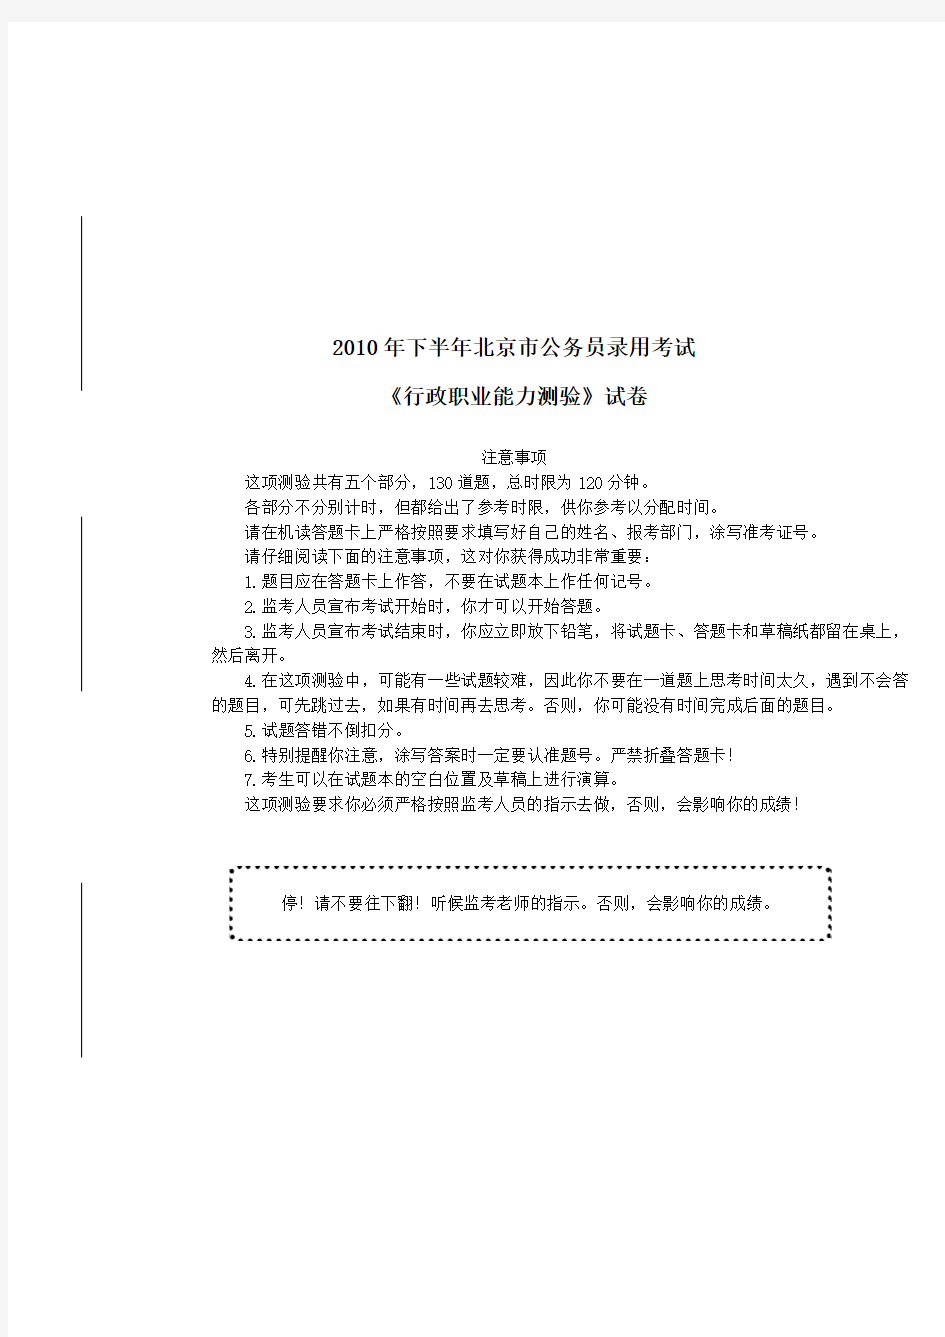 2010年下半年北京市公务员考试《行政职业能力倾向测验》真题及详解-B